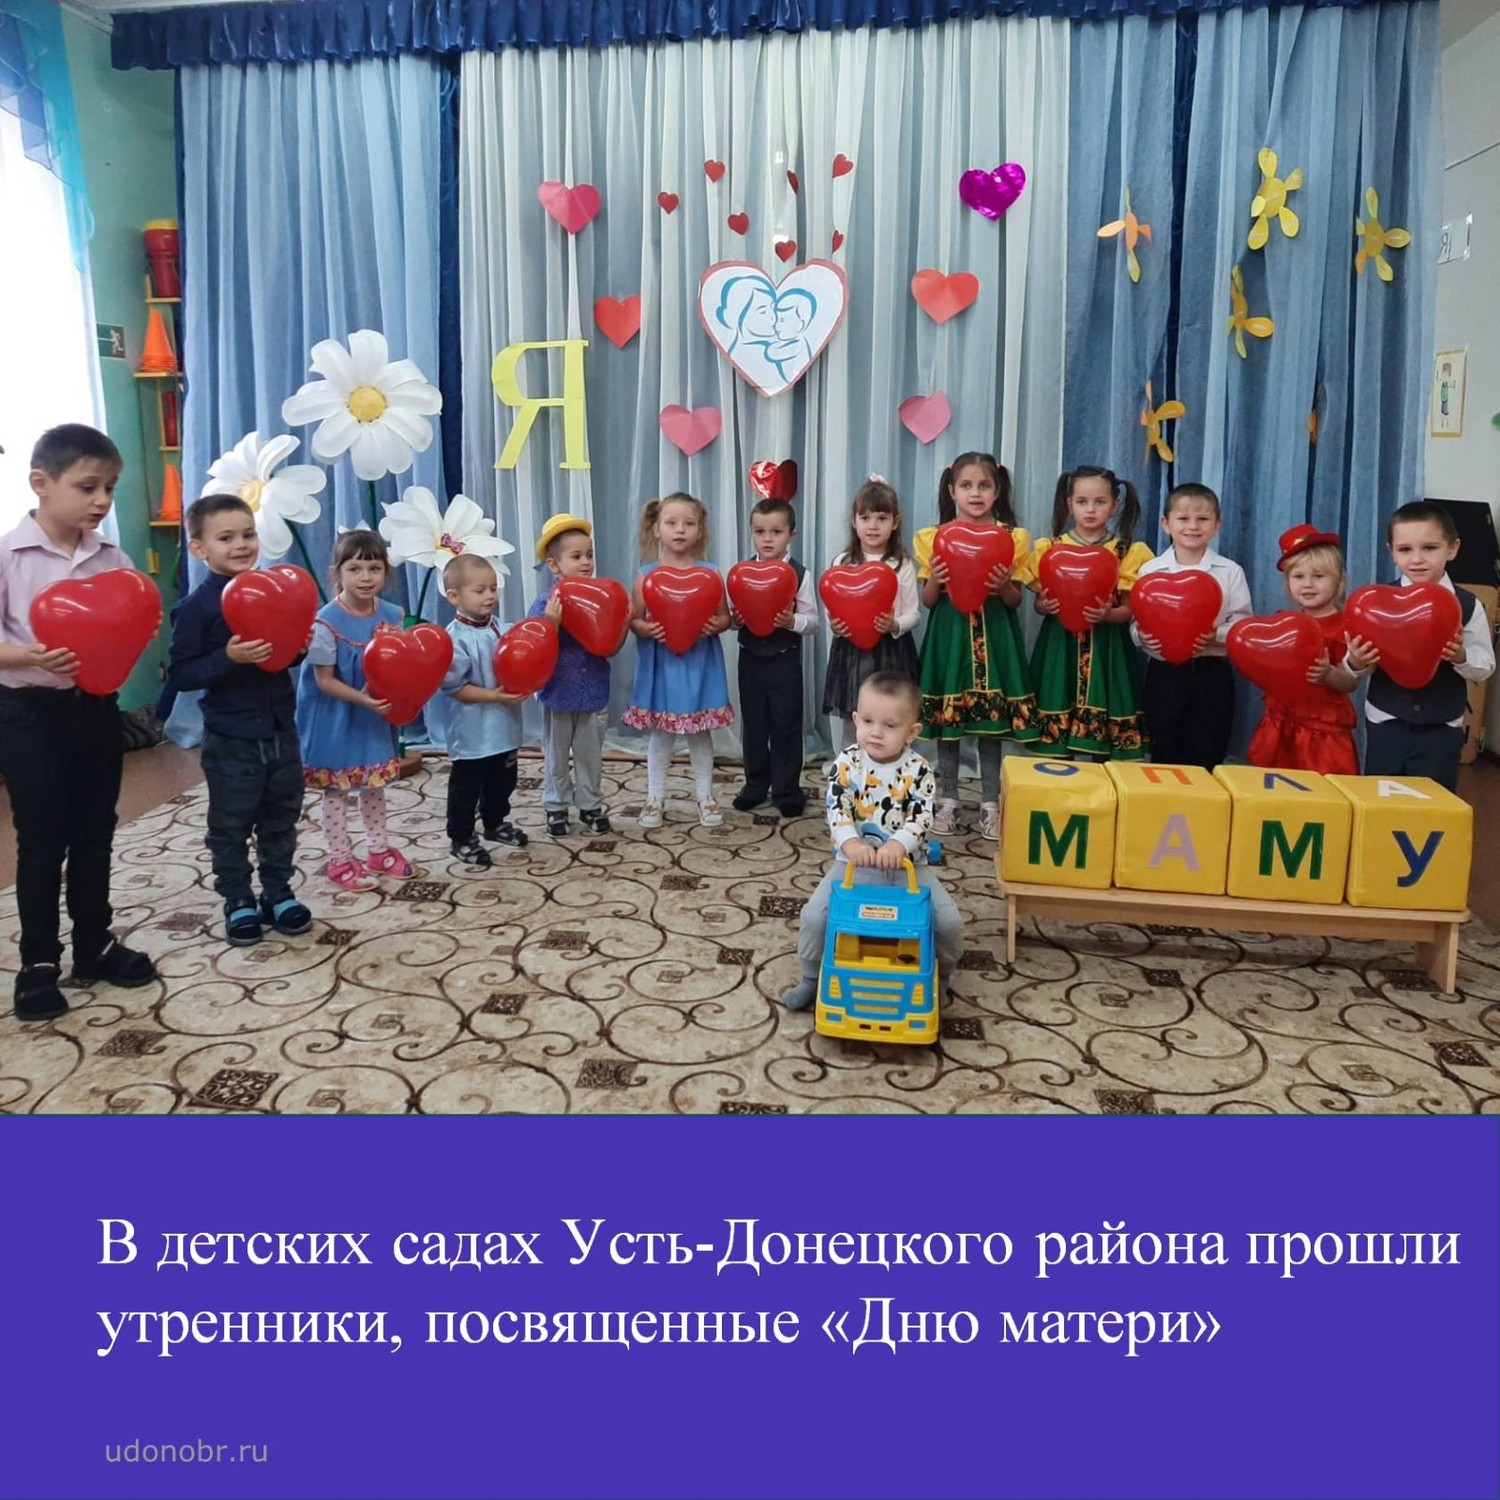 В детских садах Усть-Донецкого района прошли утренники, посвященные «Дню матери»